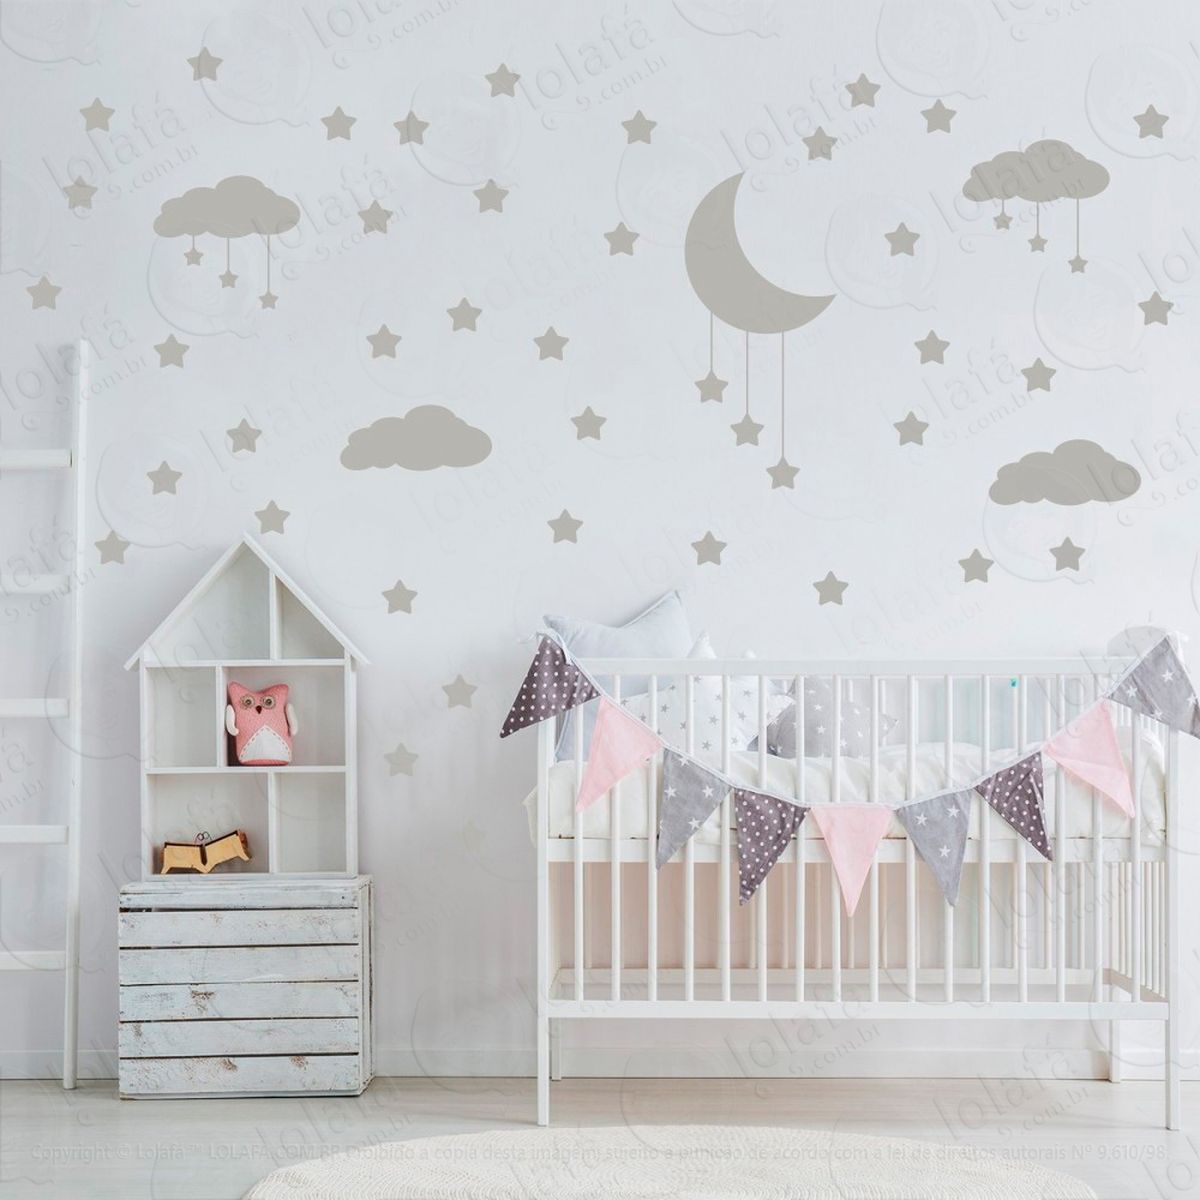 adesivos nuvens estrelas e lua 60 peças adesivos para quarto de bebê infantil - mod:744